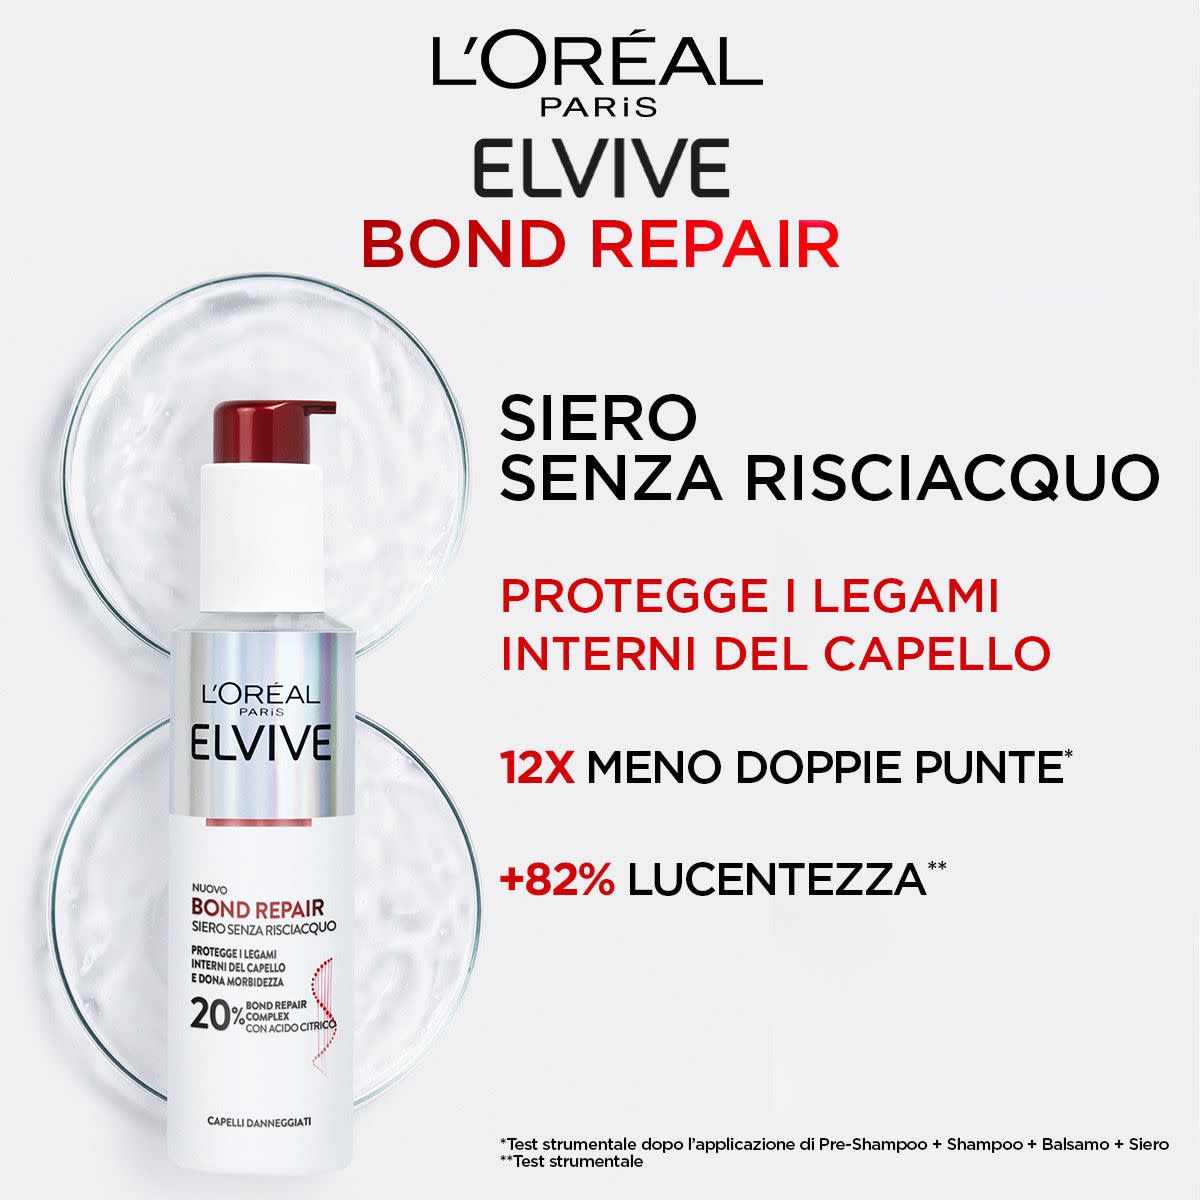 986035525 - L'Oréal Paris Elvive Bond Repair Siero Senza Risciacquo Per Capelli Danneggiati 150ml - 4742912_2.jpg